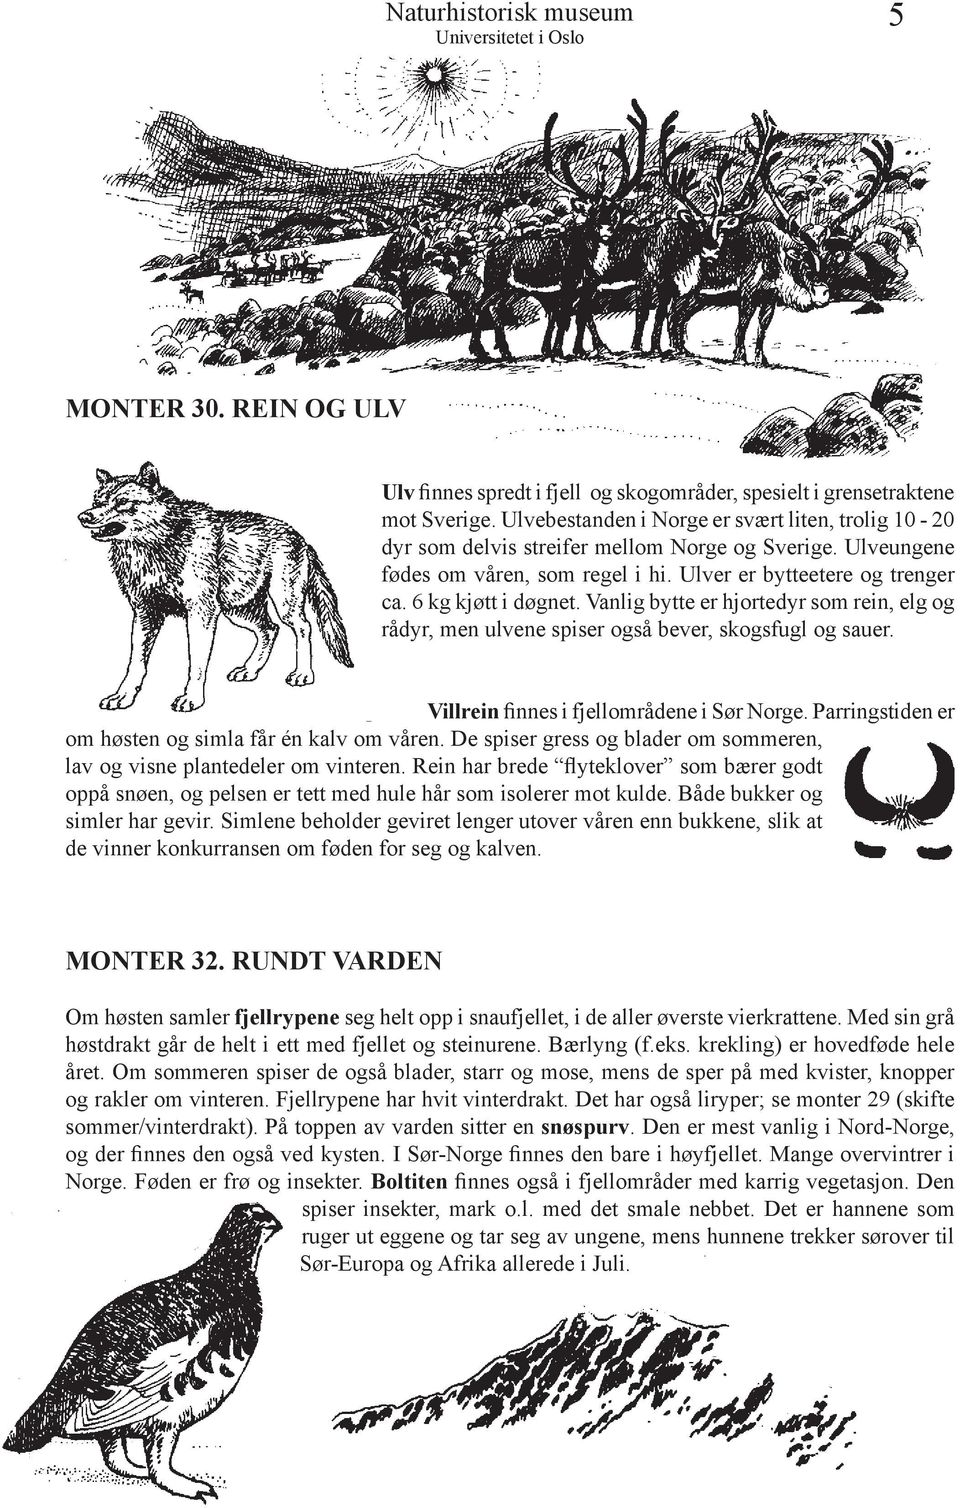 Vanlig bytte er hjortedyr som rein, elg og rådyr, men ulvene spiser også bever, skogsfugl og sauer. Villrein finnes i fjellområdene i Sør Norge.